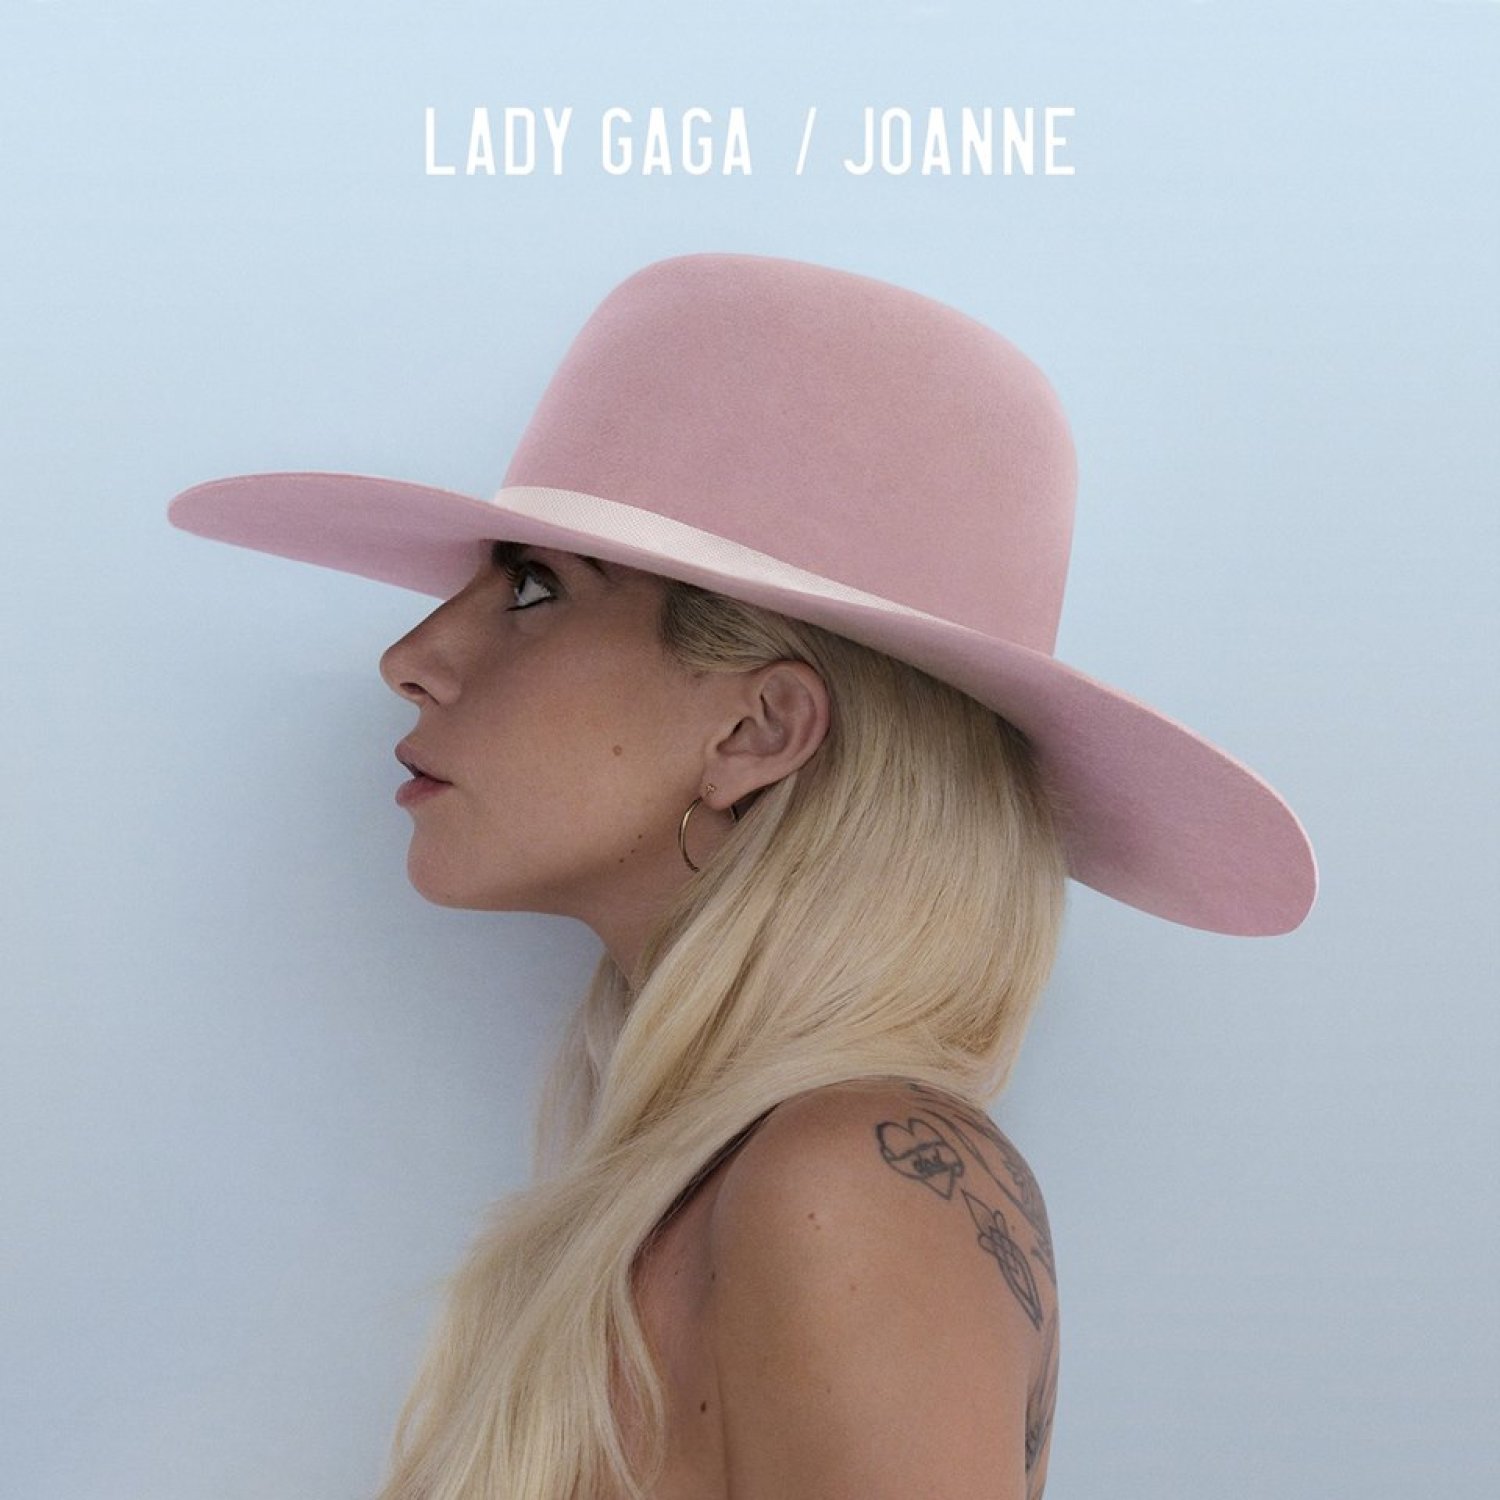 Joanne, le nouvel album de Lady Gaga 